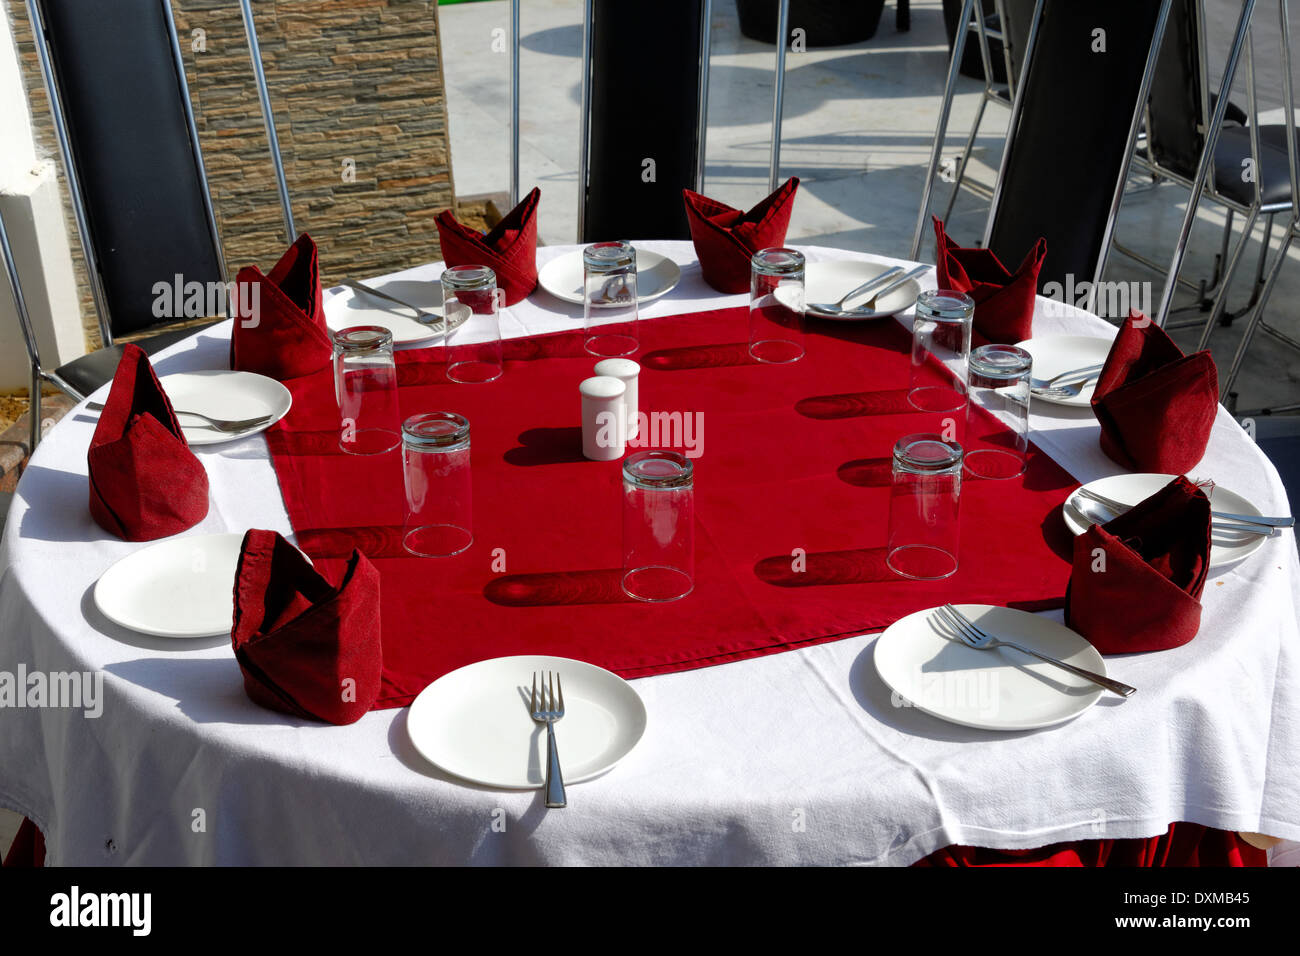 Tisch, Gläser, Gabeln, Teller, Servietten auf rote und weiße Tischdecken Stockfoto